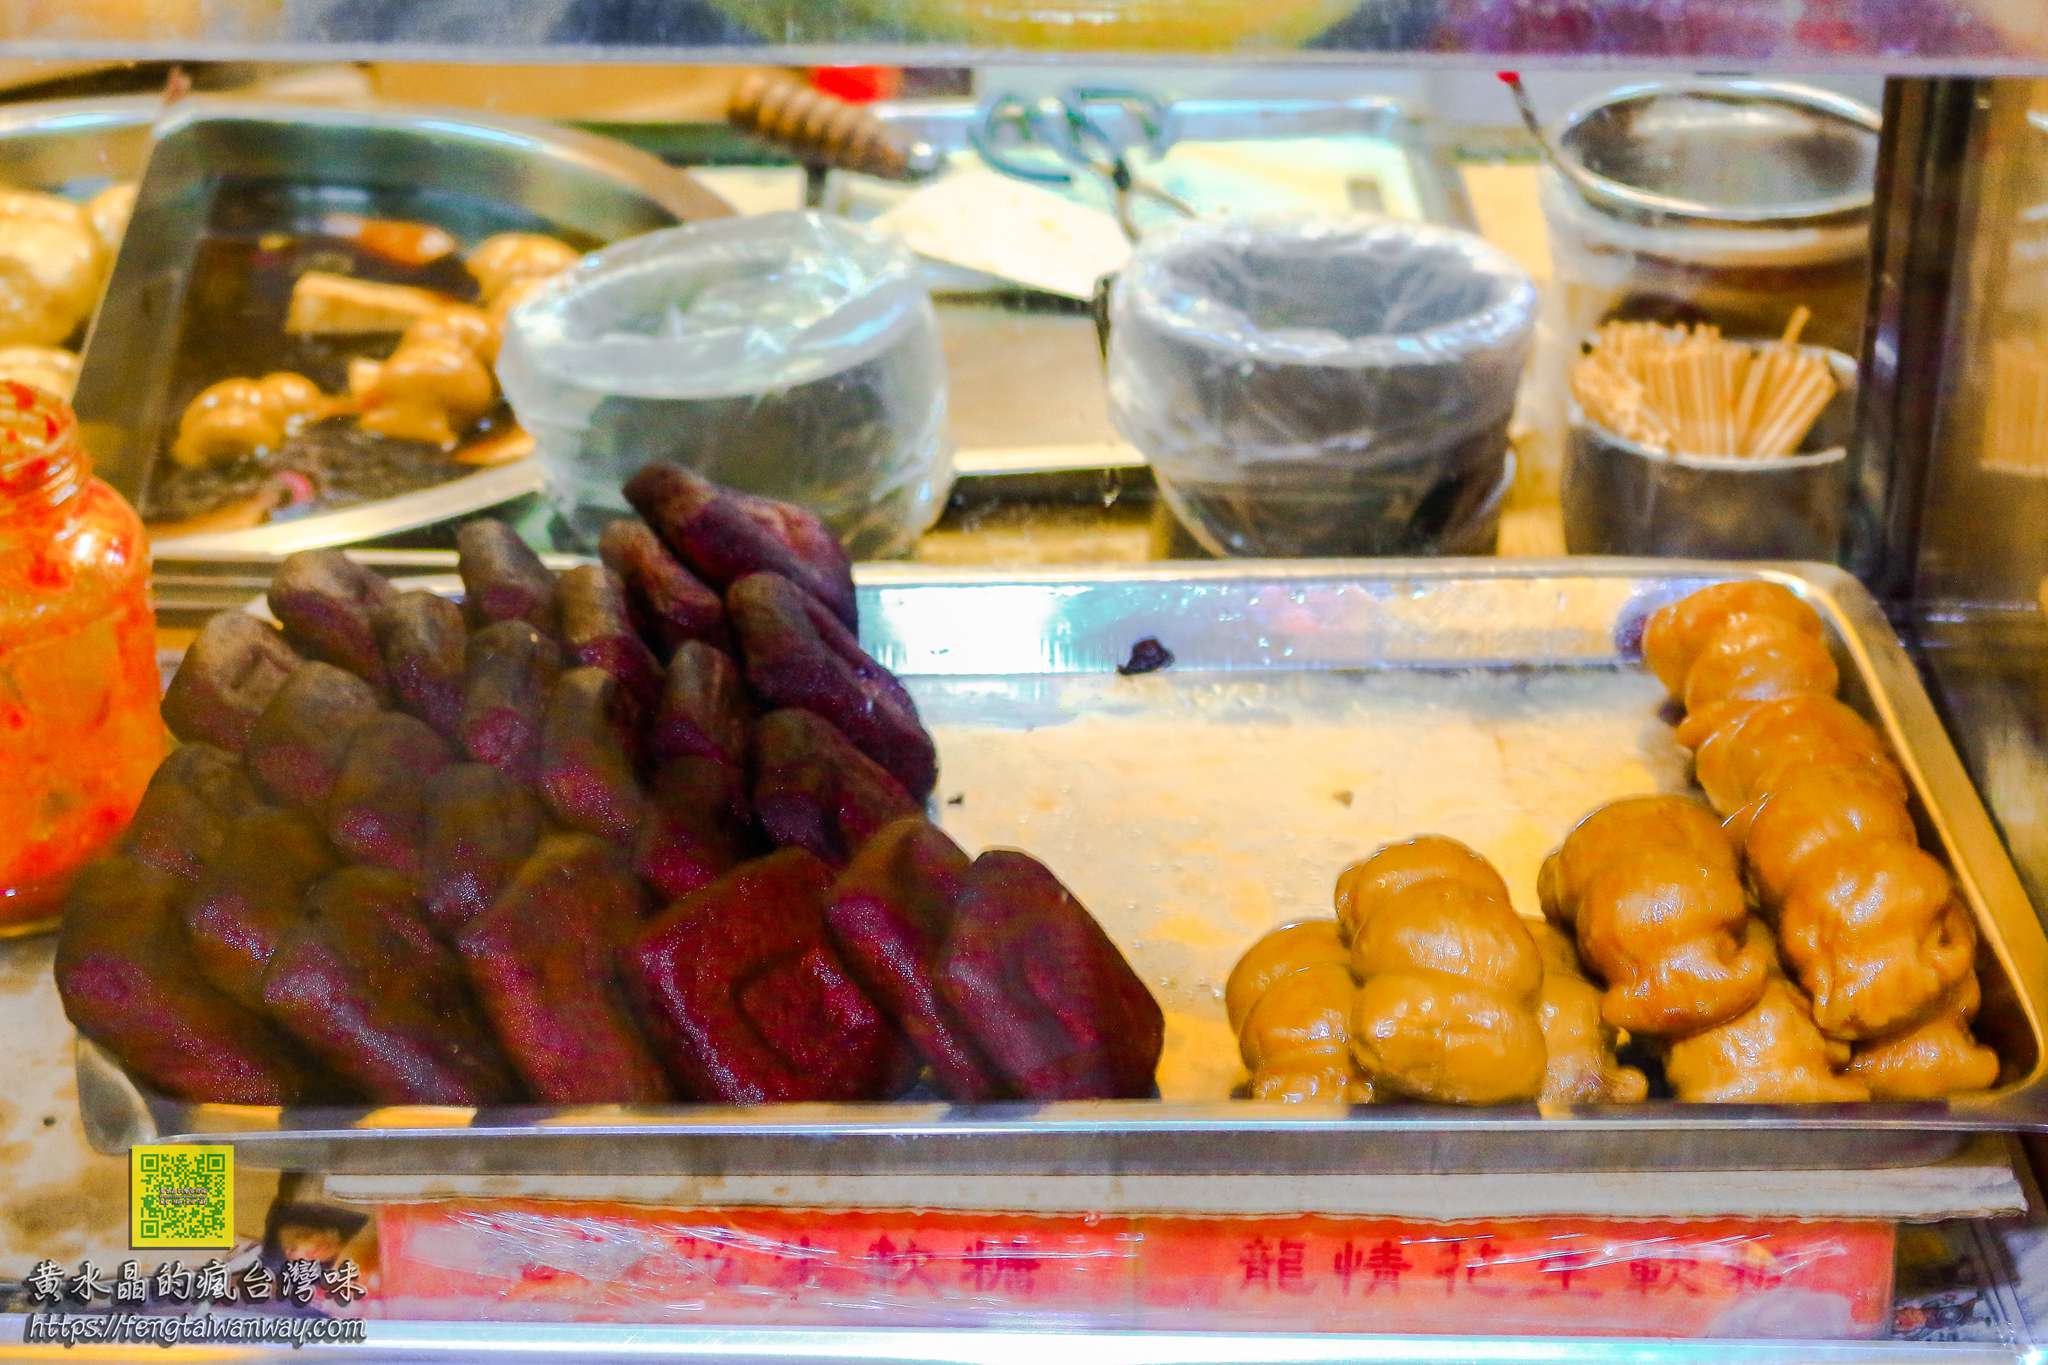 小玲冰果室【大溪冰店】|大溪老街必吃大份量當季新鮮水果冰還有大溪豆干